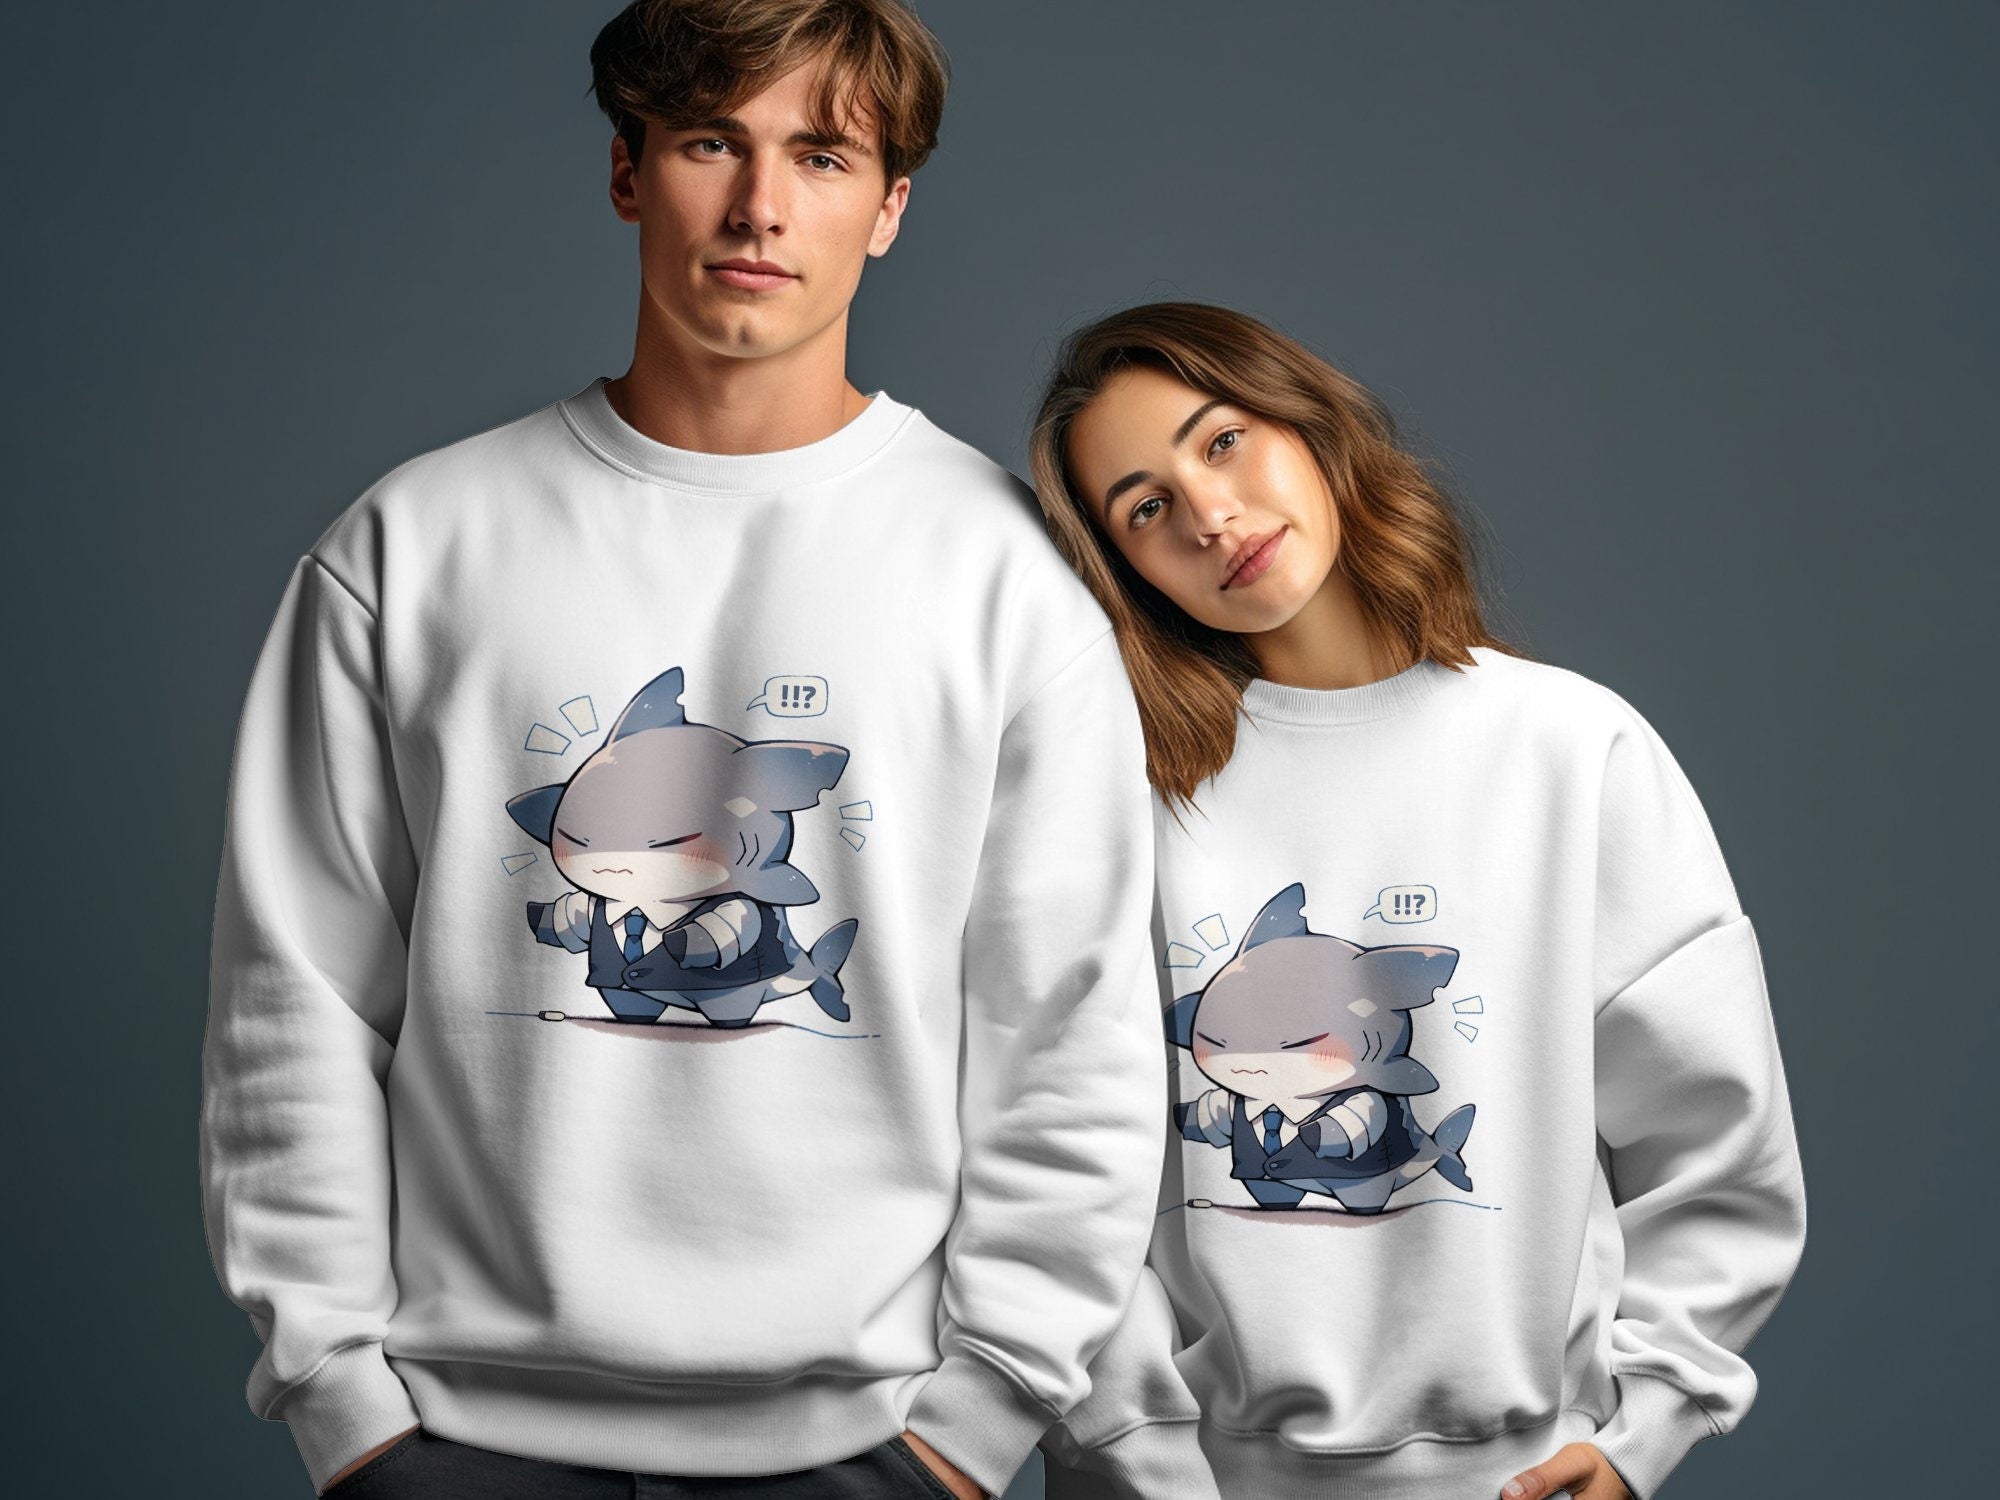 Boss Shark Cartoon Sweatshirt - MiTo Store